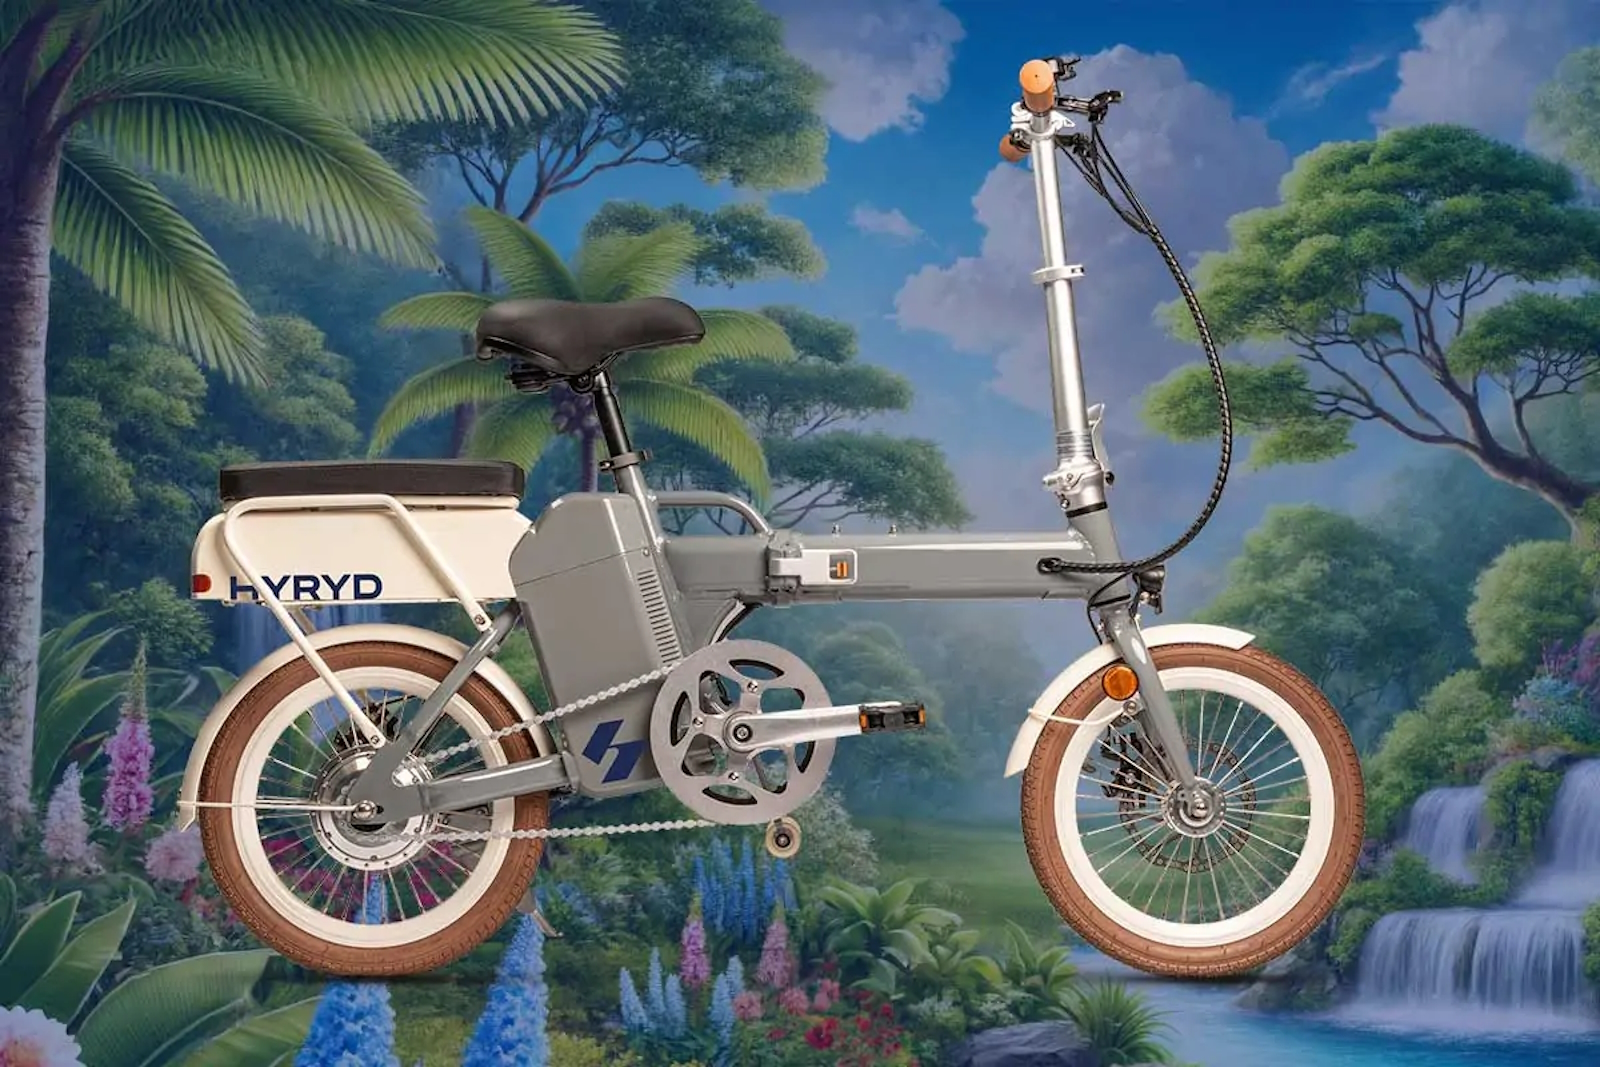 La recharge du vélo s’effectue en remplaçant le réservoir d’hydrogène. © HydroRide Europe